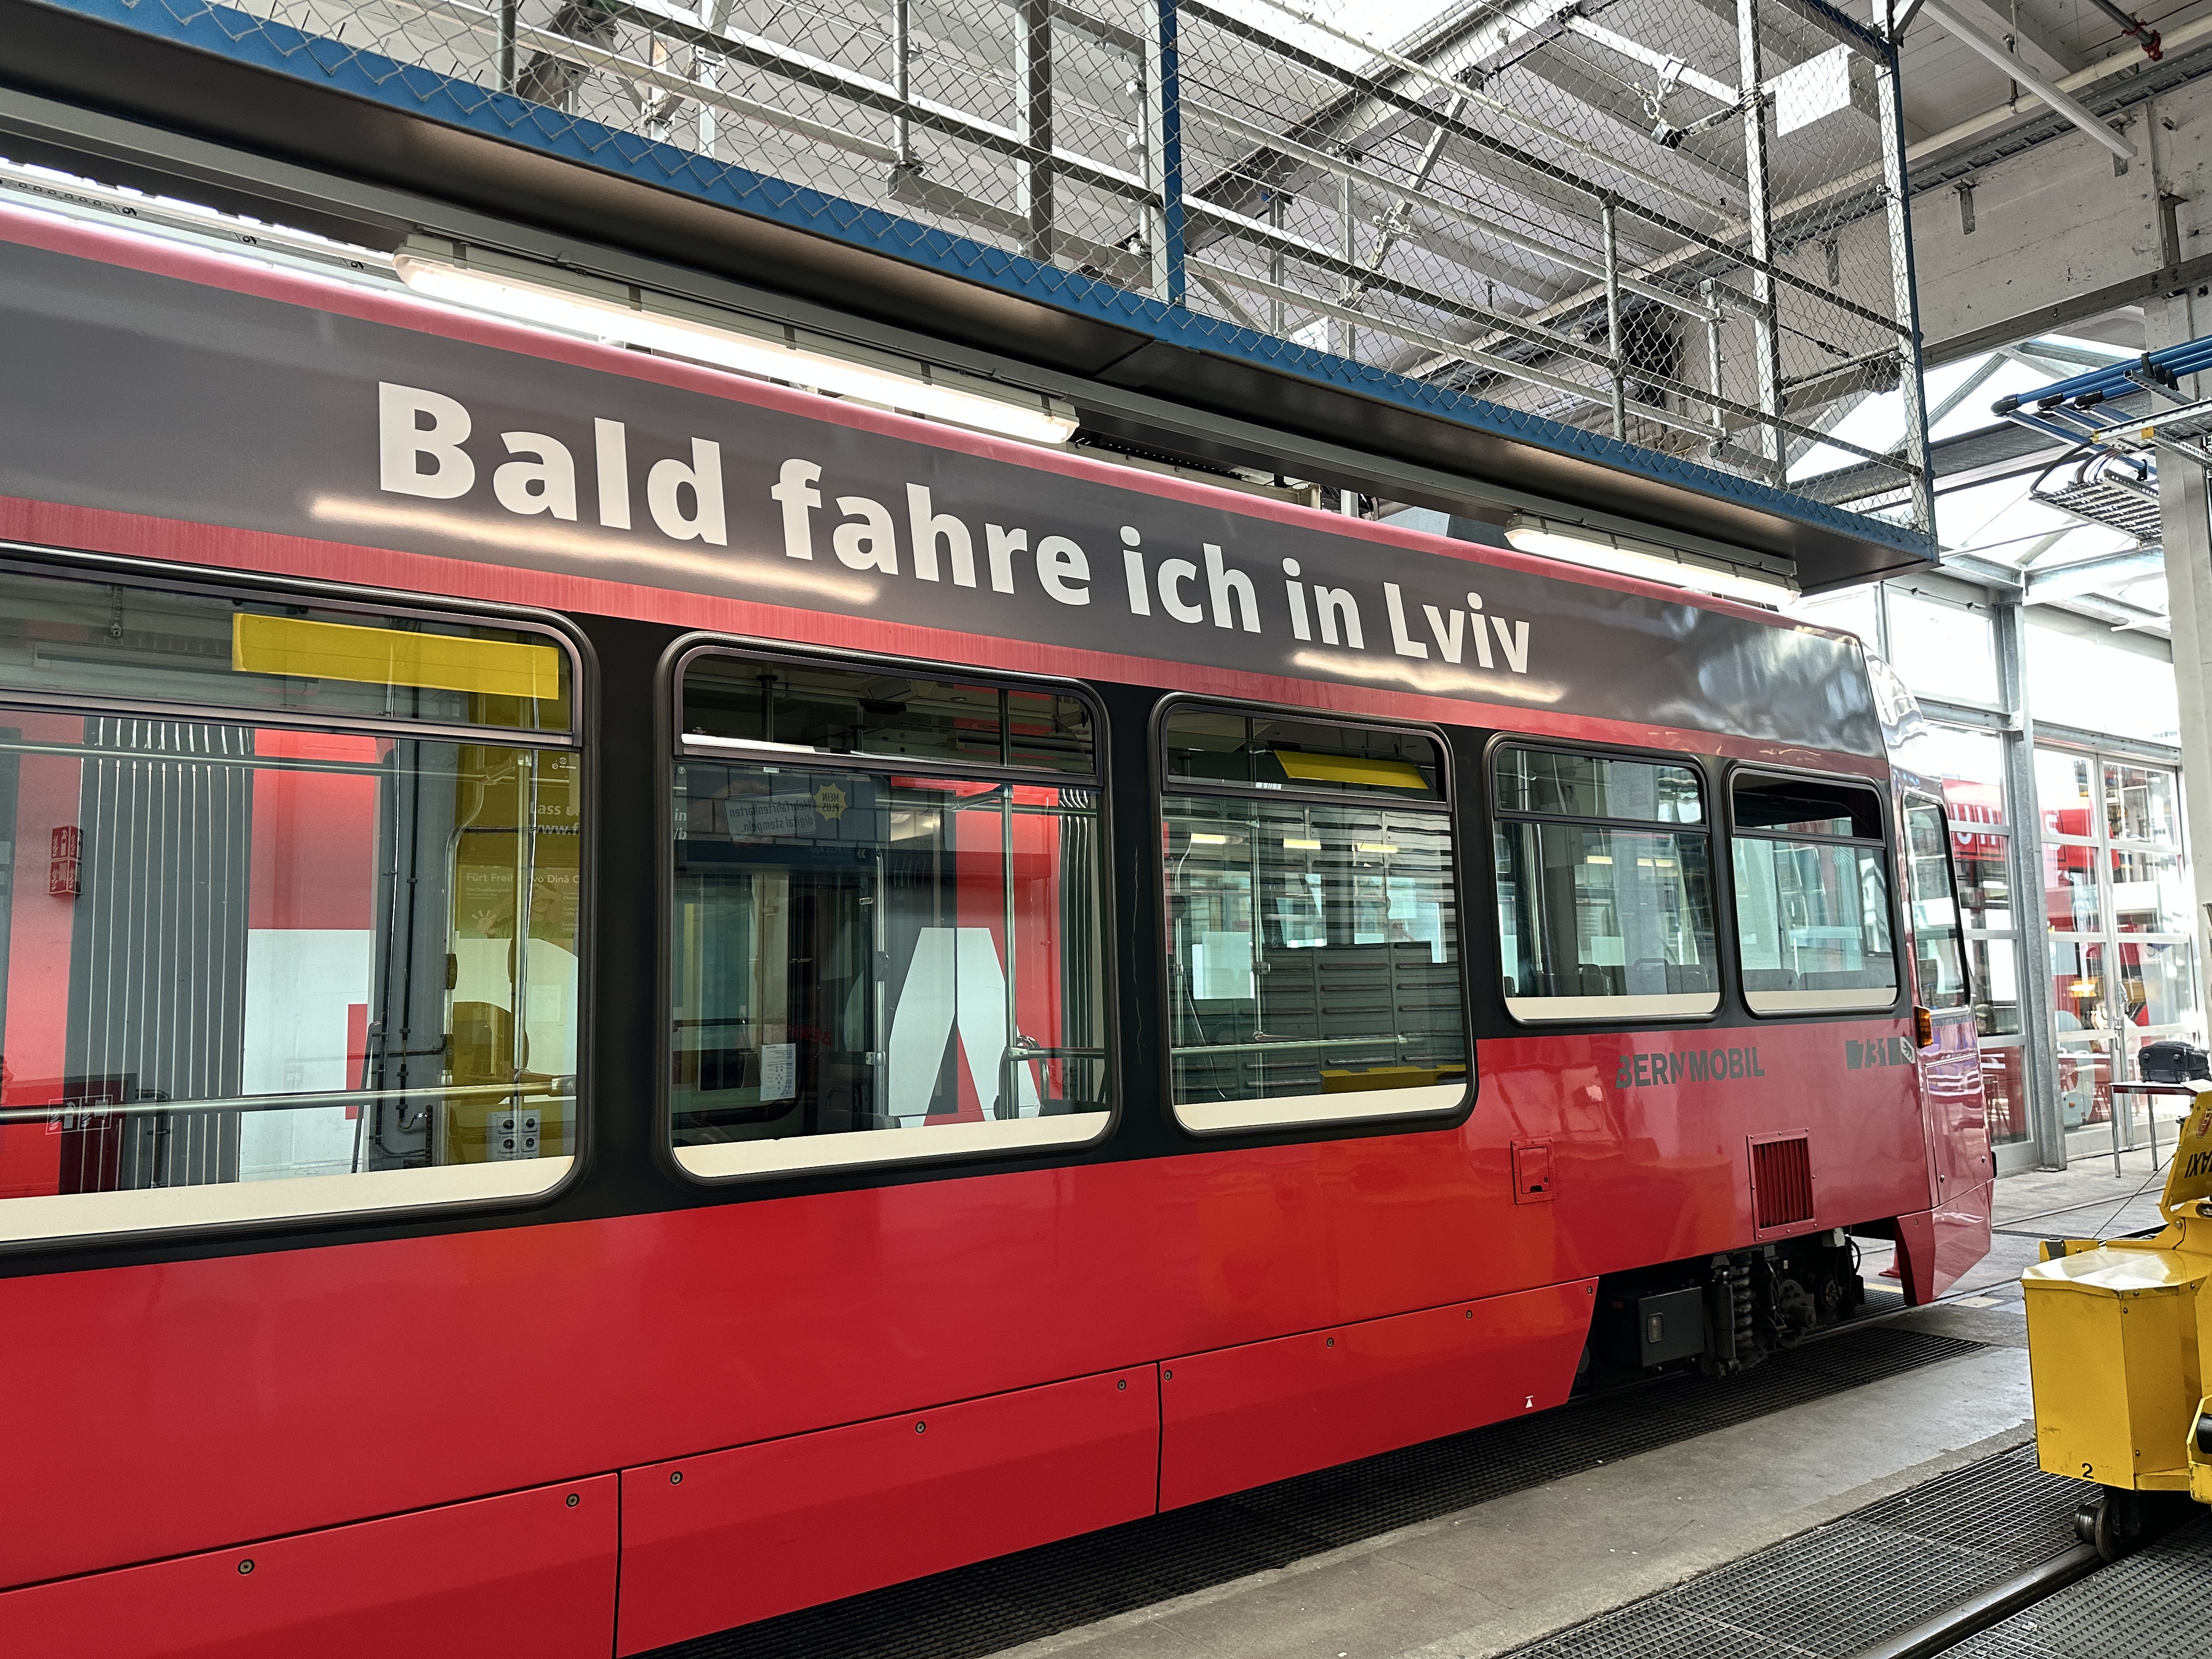 A BERNMOBIL "Vevey" tram destined for Lviv